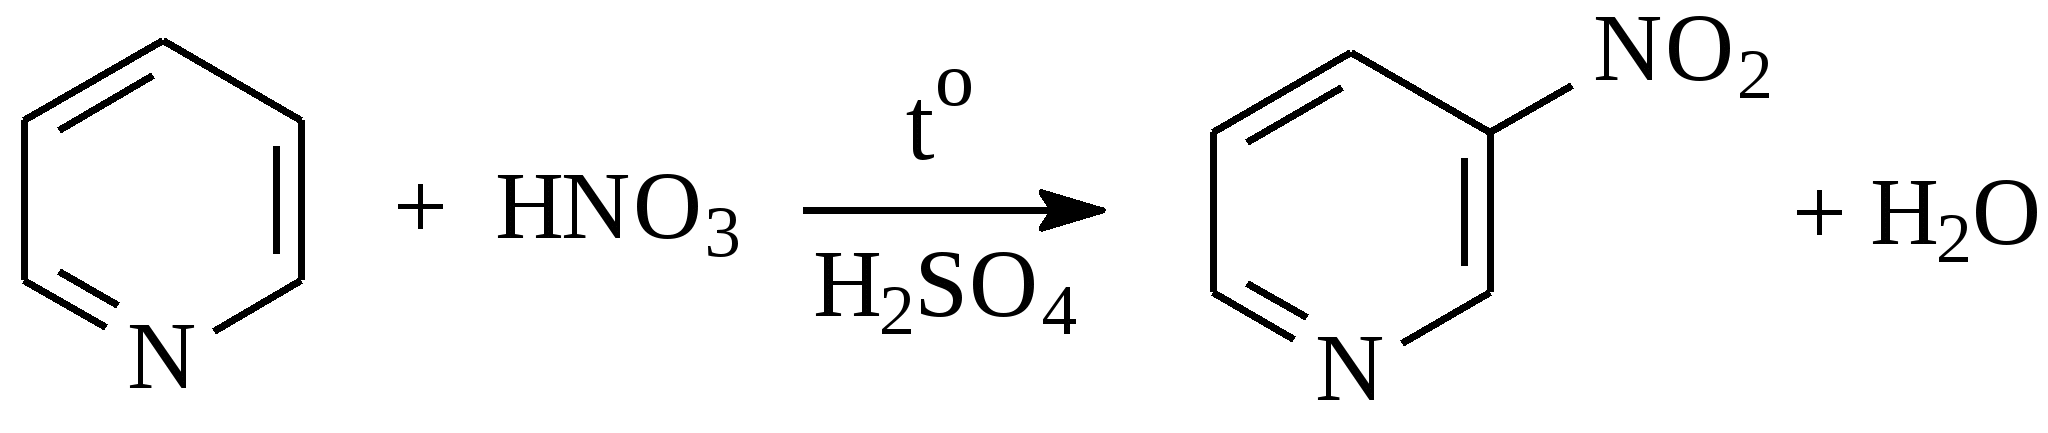 Zn cao p hno3. Сульфирование пиридина. Пиридин и серная кислота. Нитрование пиридина. Пиридин и соляная кислота.